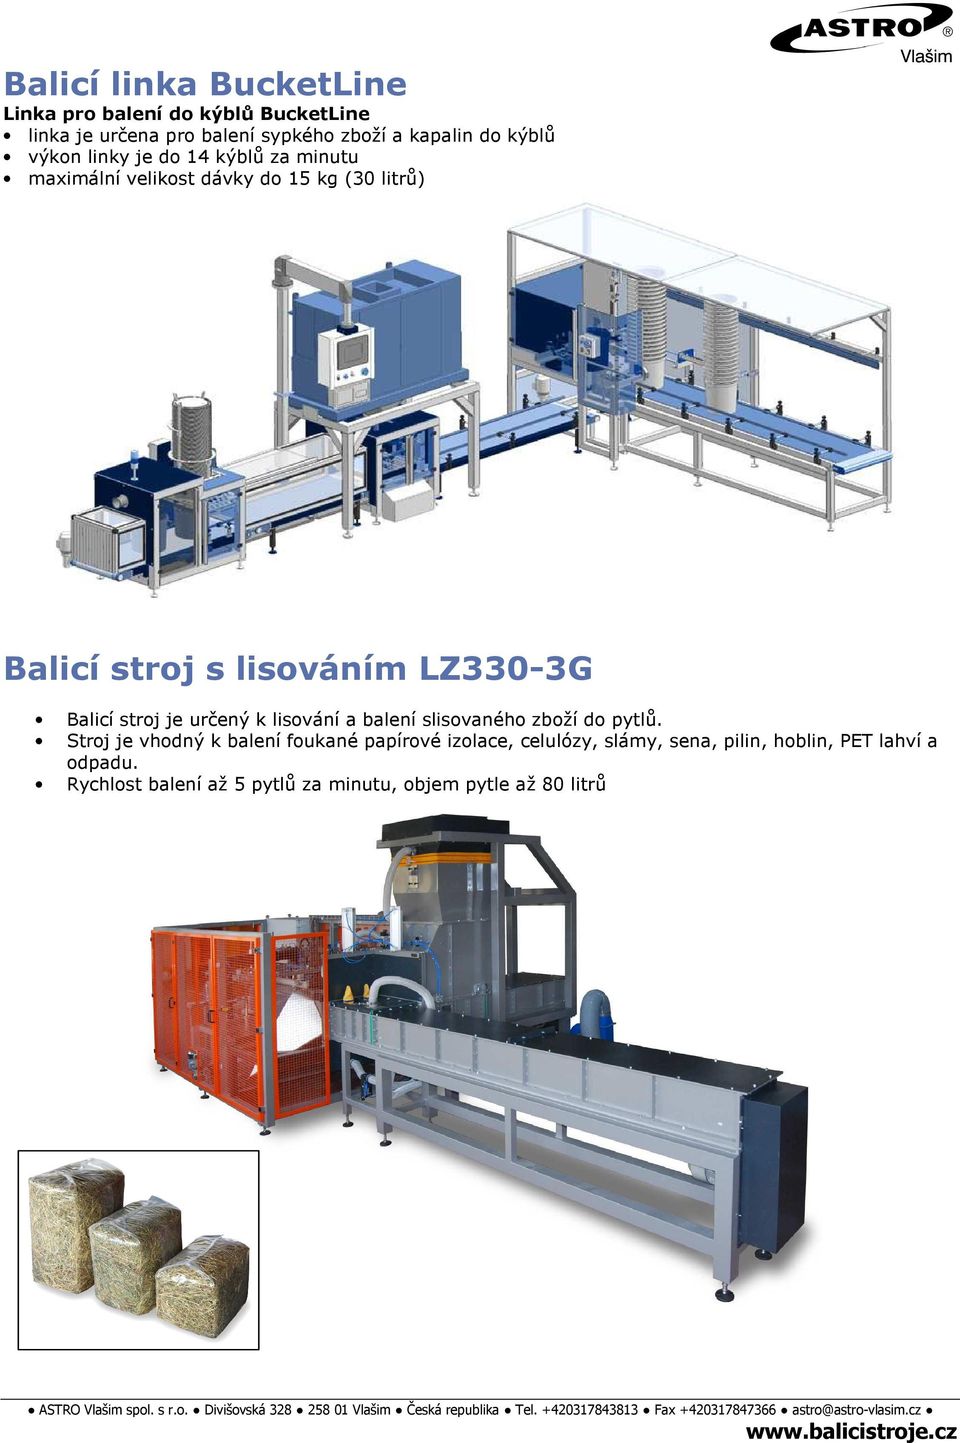 LZ330-3G Balicí stroj je určený k lisování a balení slisovaného zboží do pytlů.